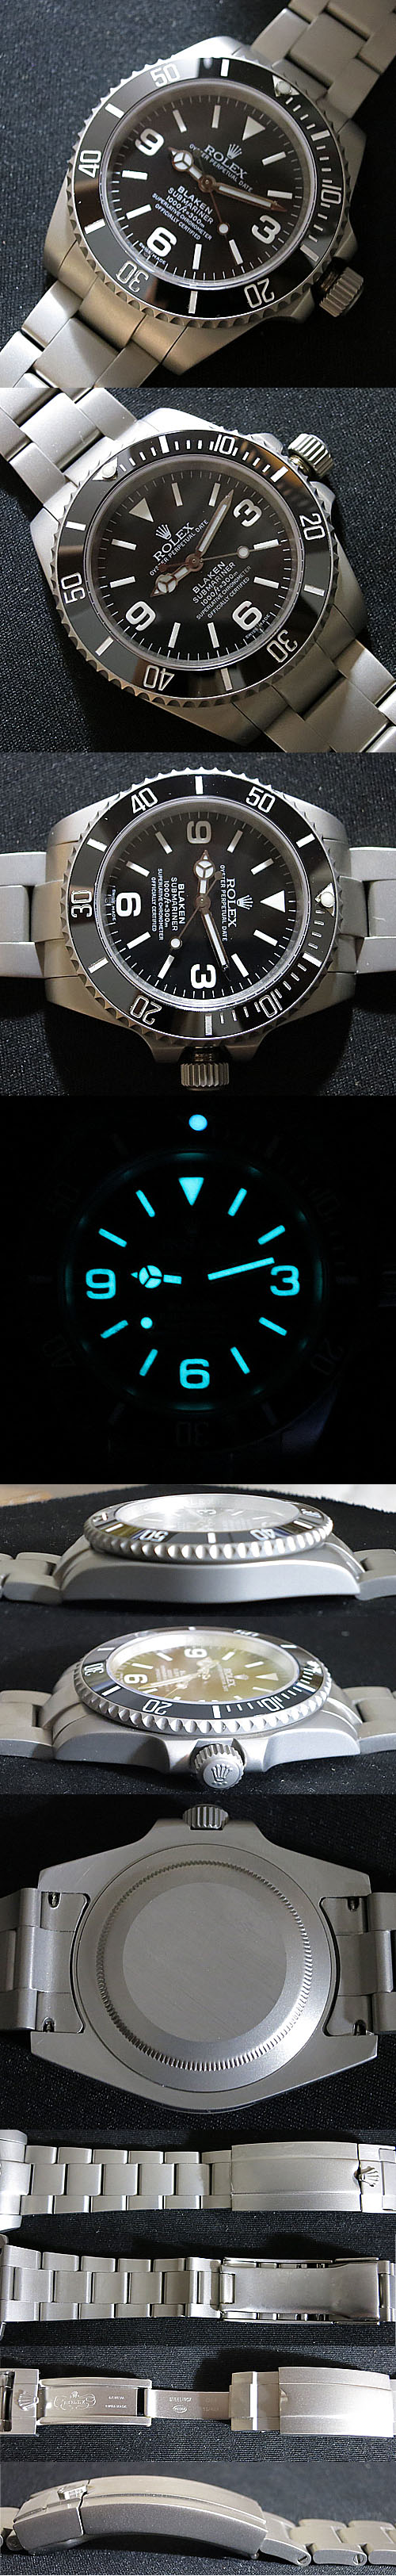 レプリカ時計 ロレックス サブマリーナ Asian 21600振動 - ウインドウを閉じる